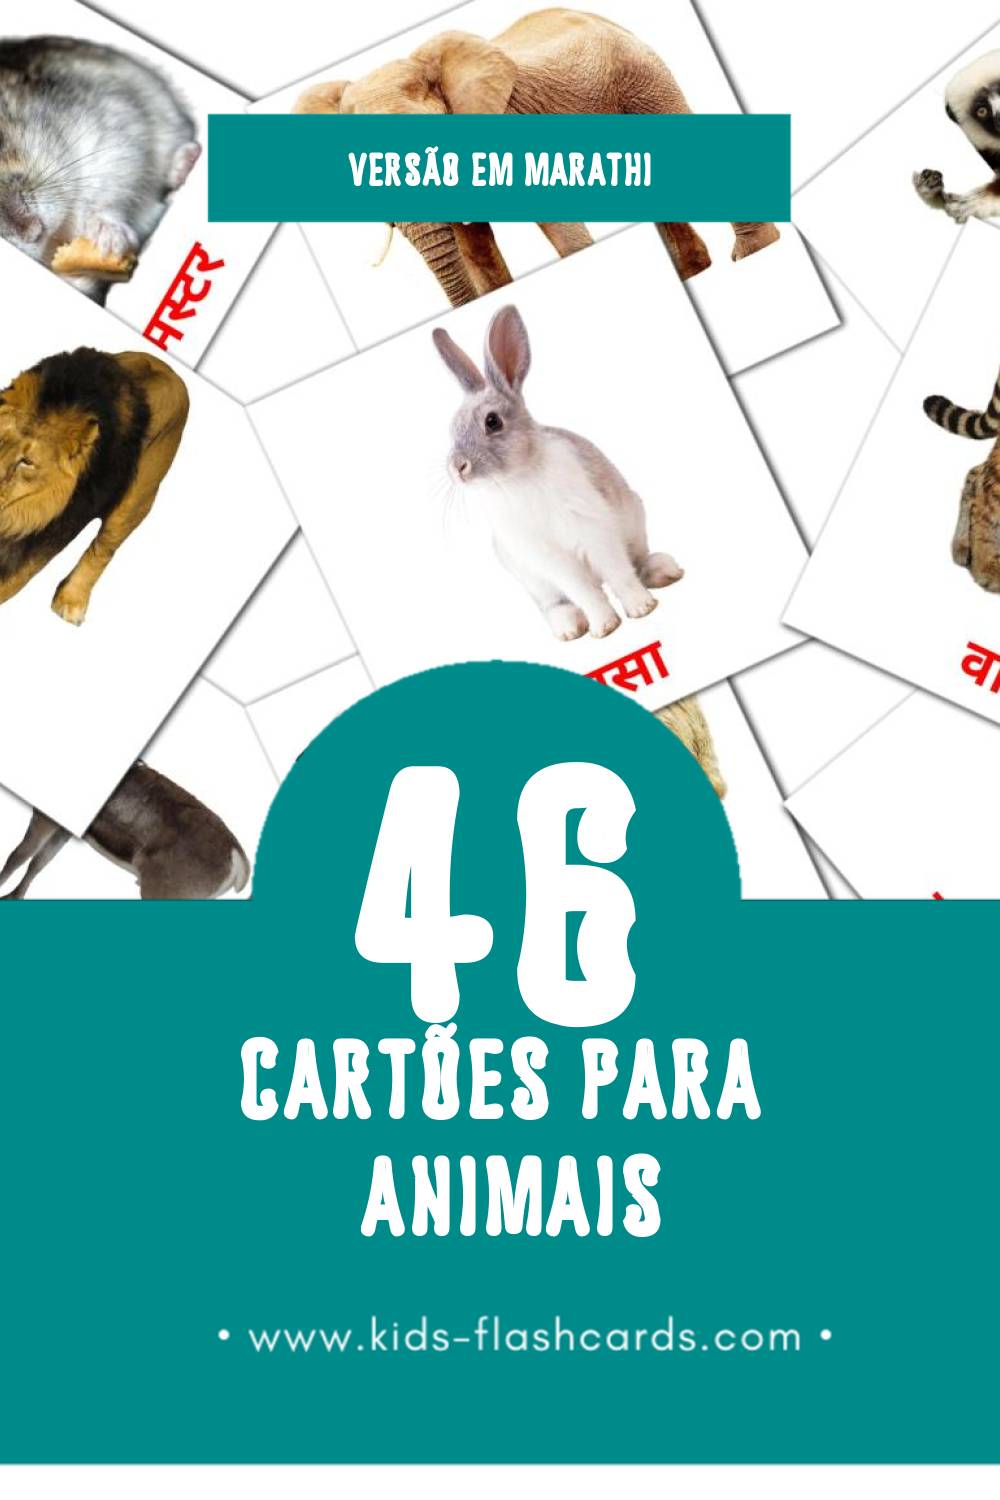 Flashcards de प्राणी Visuais para Toddlers (46 cartões em Marathi)